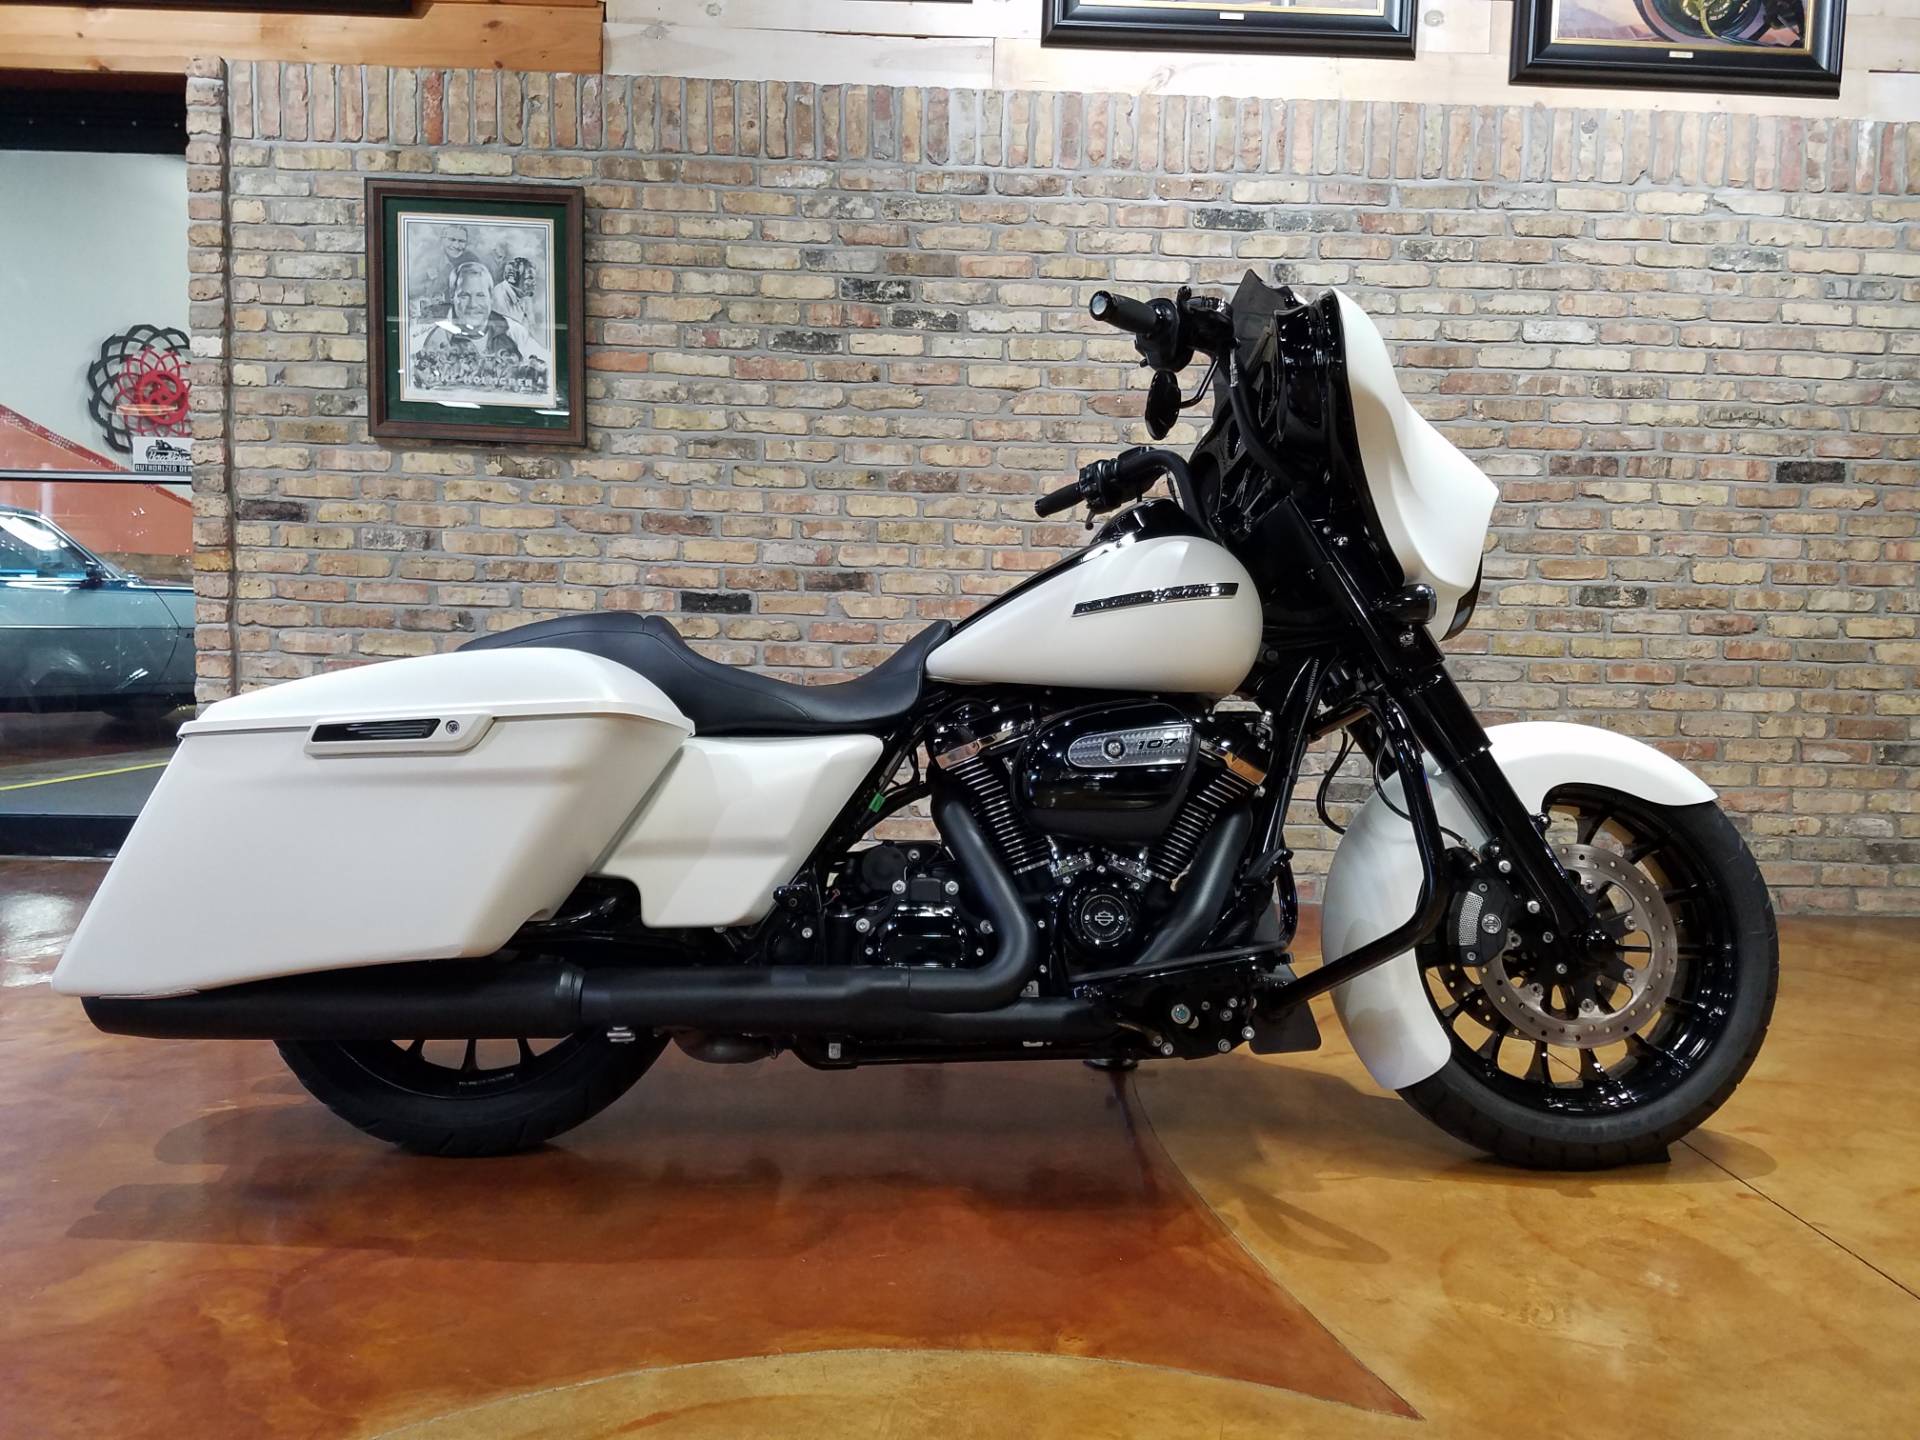 Used 2018 Harley Davidson Street Glide Special Motorcycles In Big Bend Wi 4268 Bonneville Salt Denim